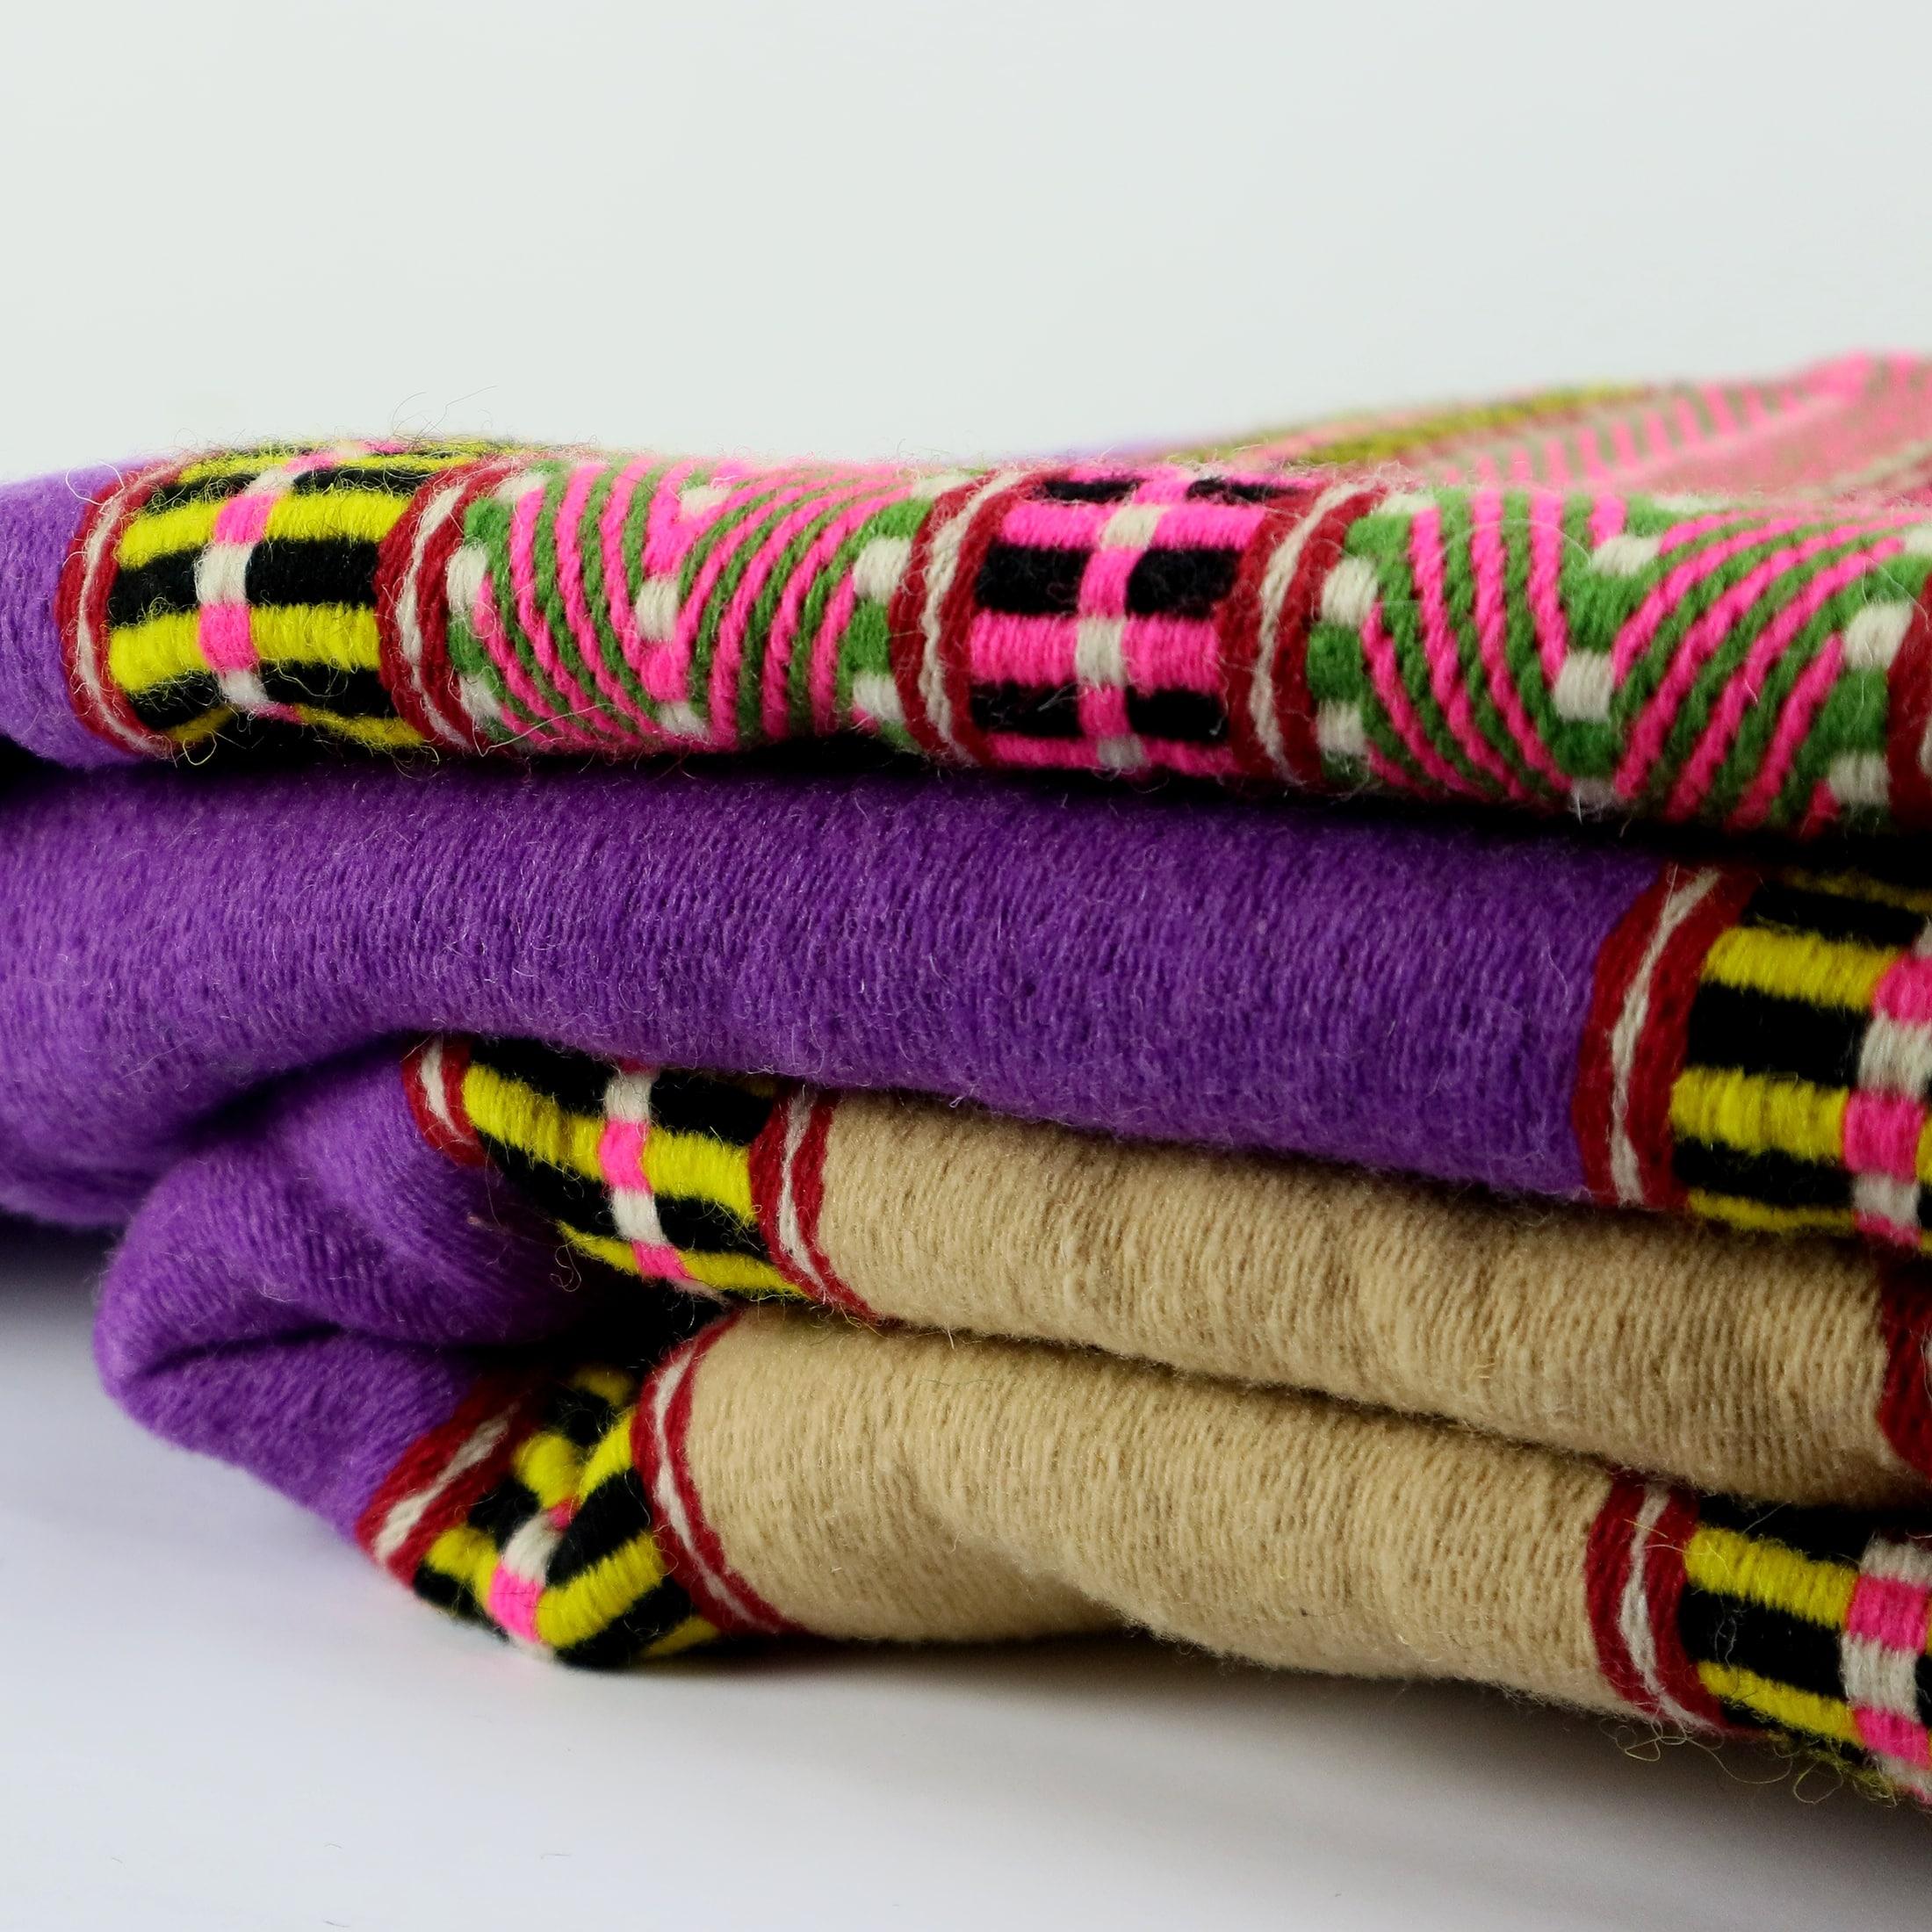 Tapis Menizia #06 ist ein handgewebter Teppich mit einem eklektischen Stil aufgrund seiner einzigartigen Farbe, Muster und Textur. 
Dieser rechteckige, handgewebte Teppich hat eine violette Farbpalette und verspielte Streifen in Gelb, Orange und